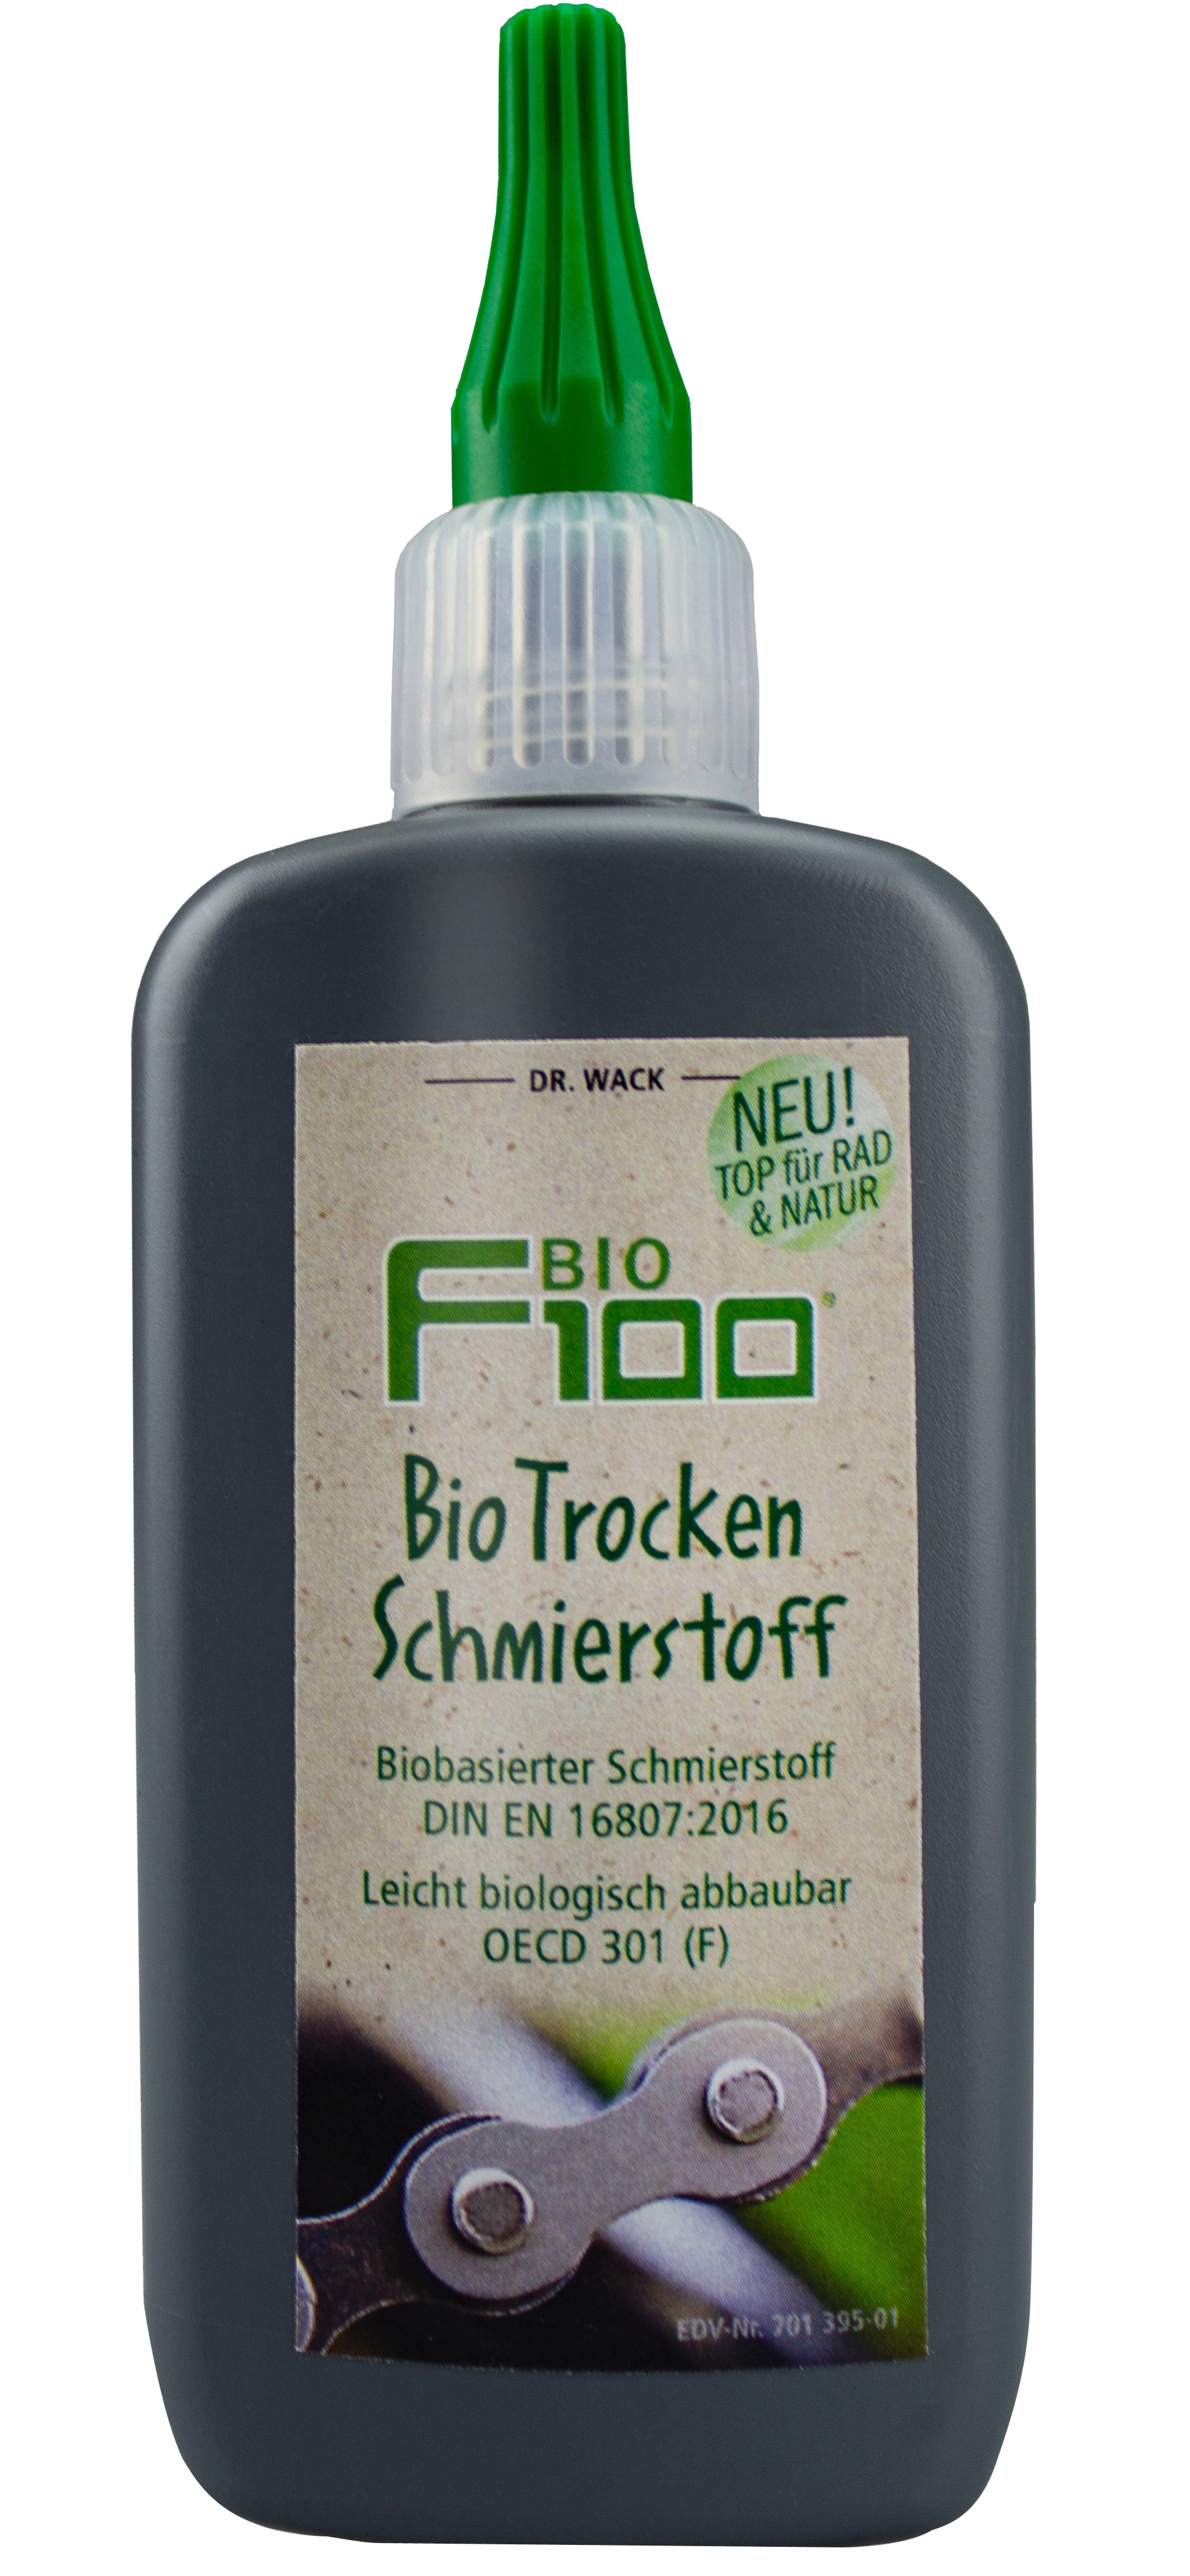 Dr. Wack F100 Bio Trocken Schmierstoff 100 ml kaufen bei OBI